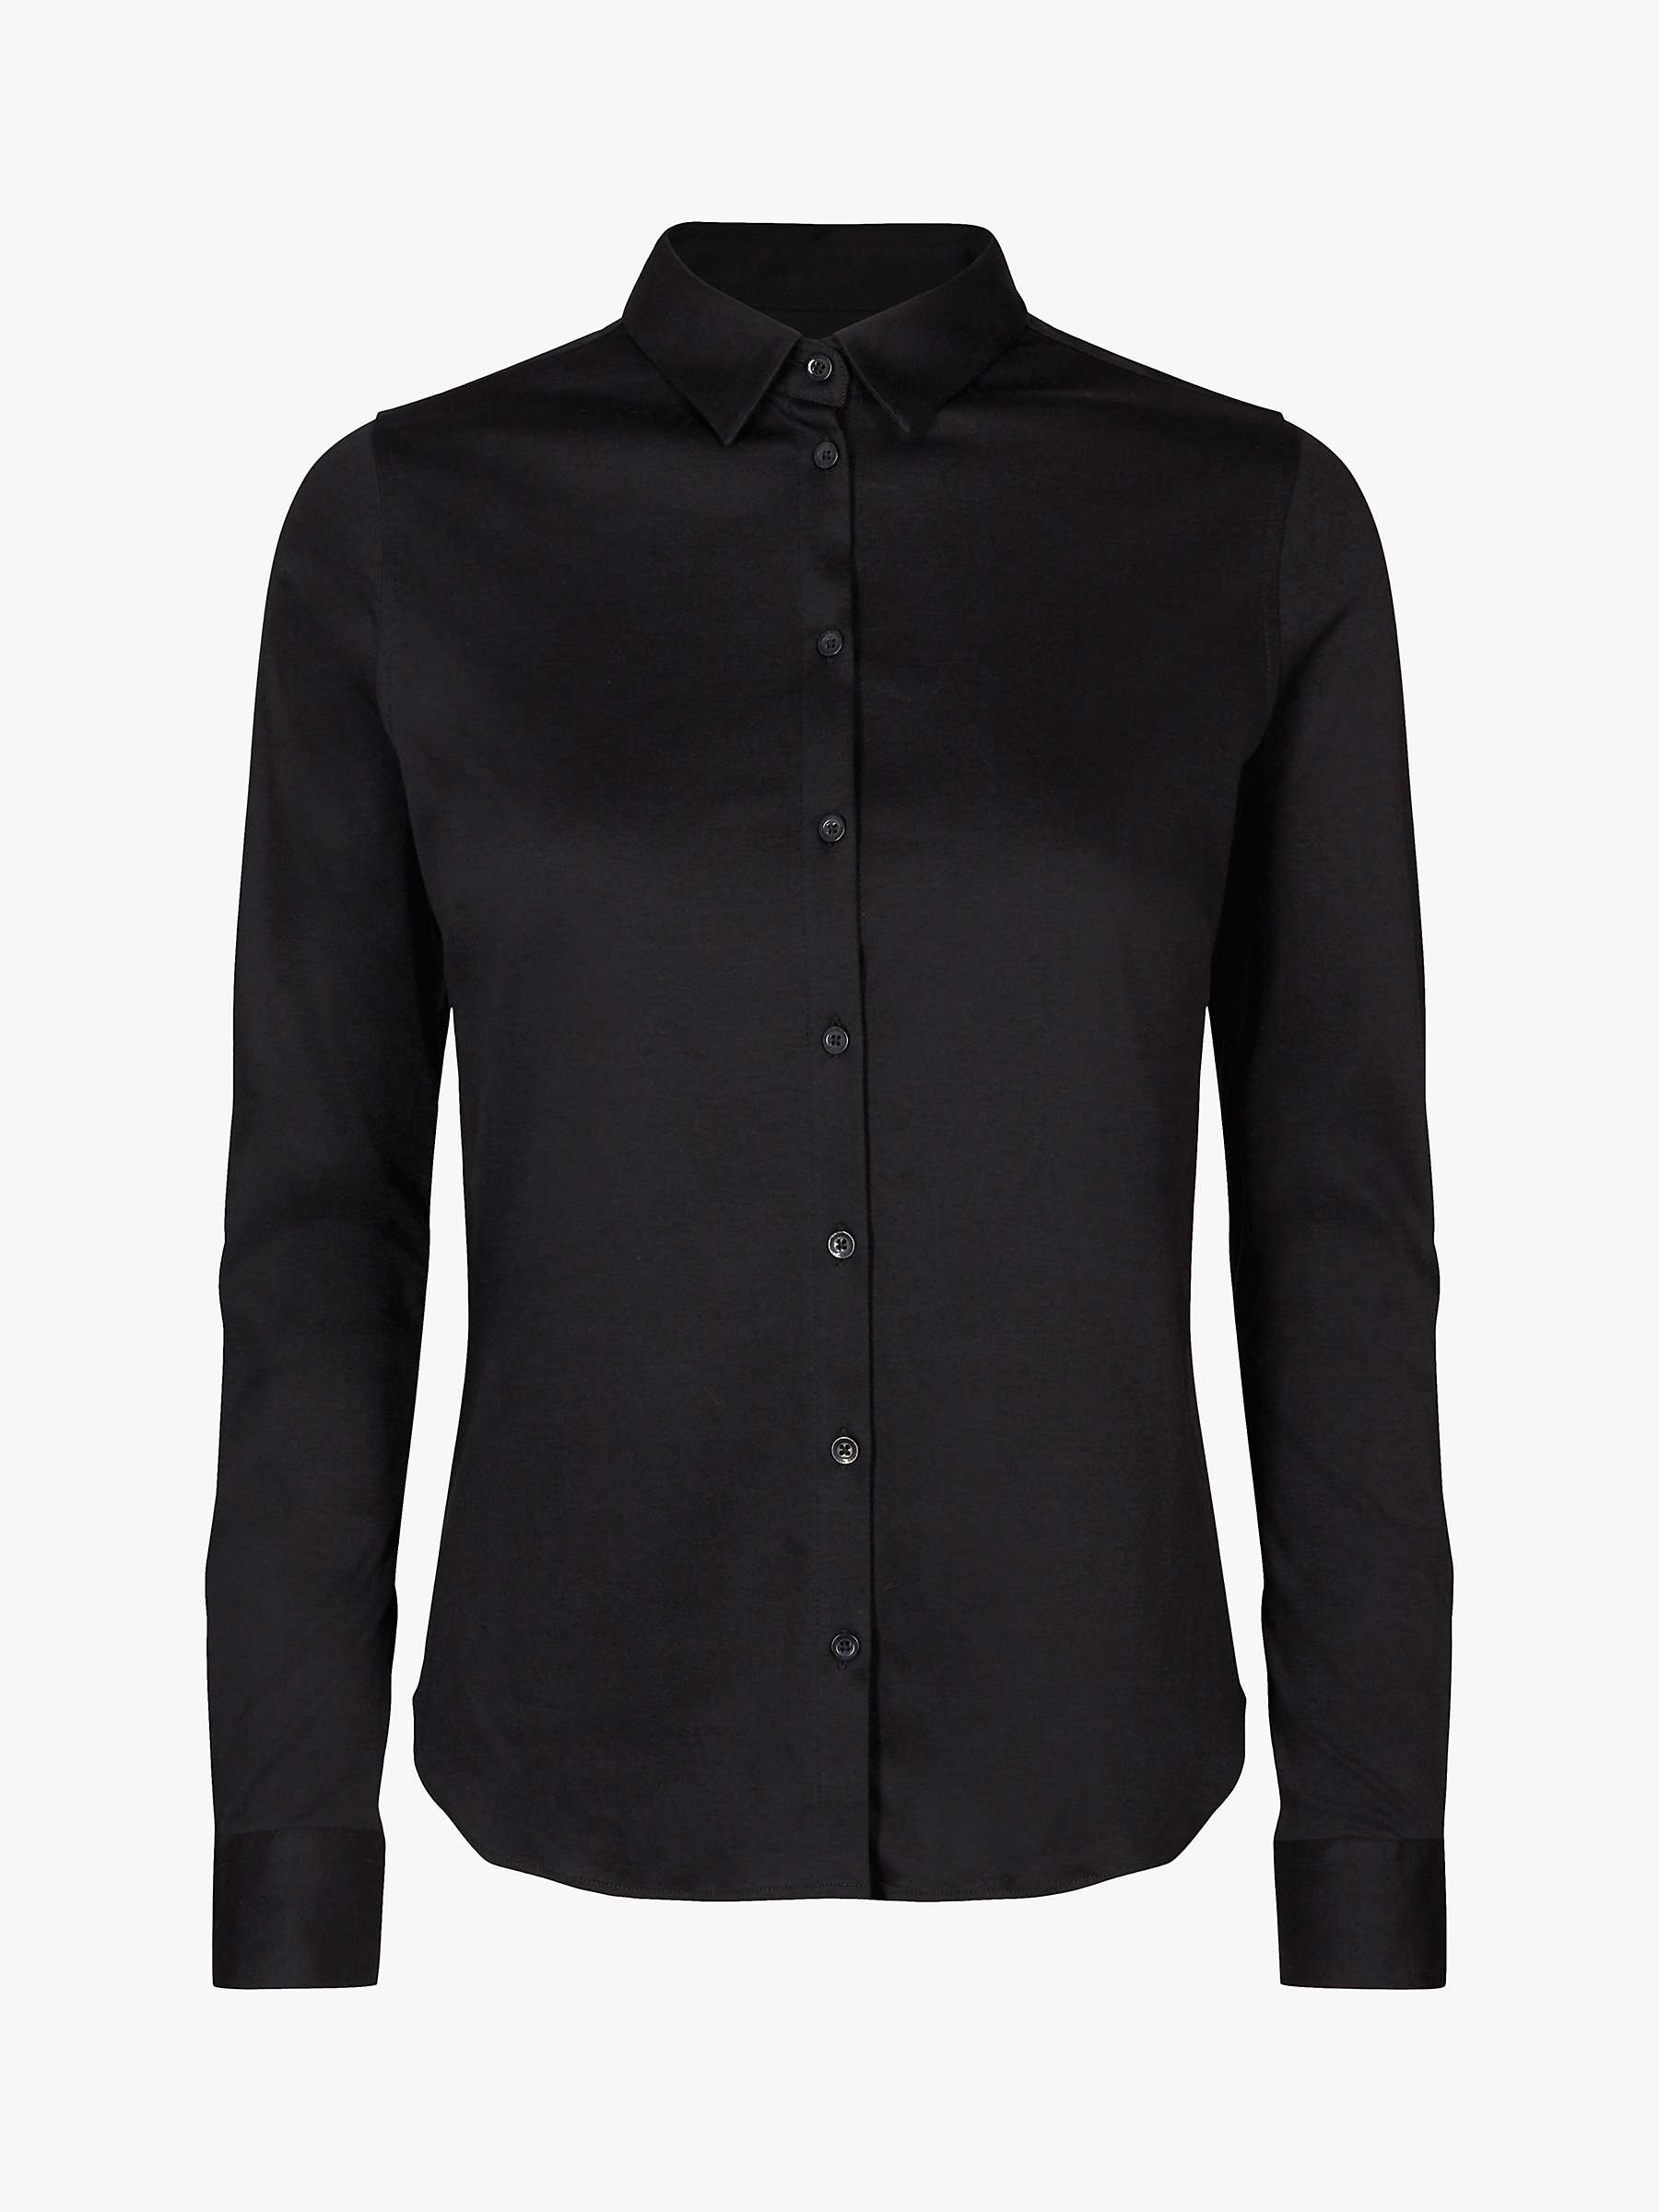 MOS MOSH Tina Jersey Shirt, Black at John Lewis & Partners